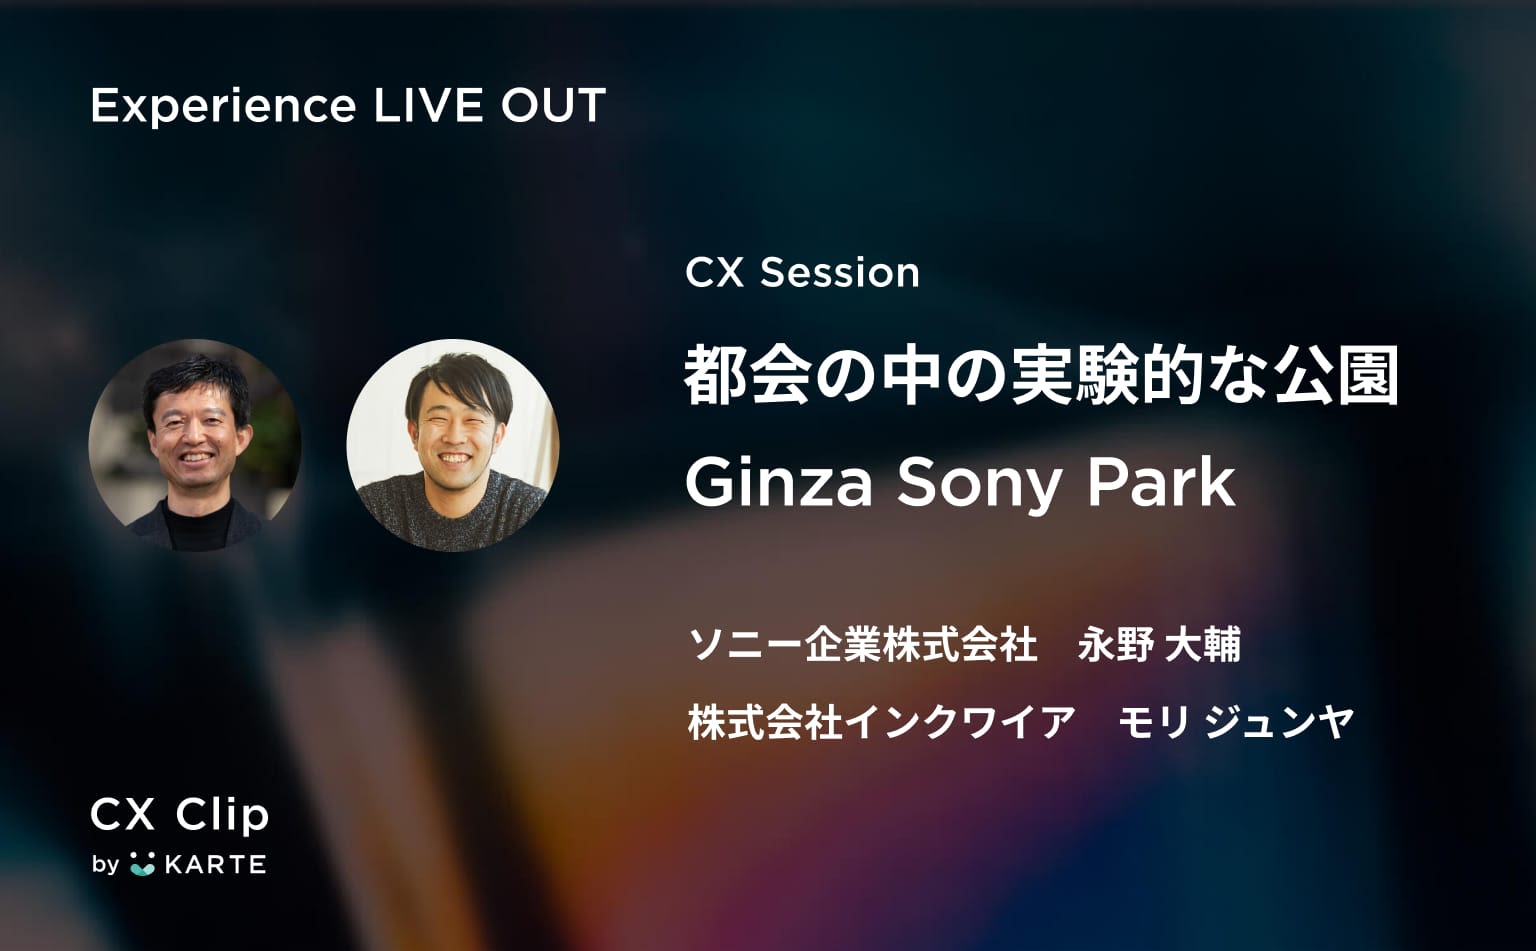 “ソニーらしさ”の解釈は顧客に委ねる。ブランドプロフィットセンターとしてのGinza Sony Parkはなぜ実験を続けるのか？#exp_liveout